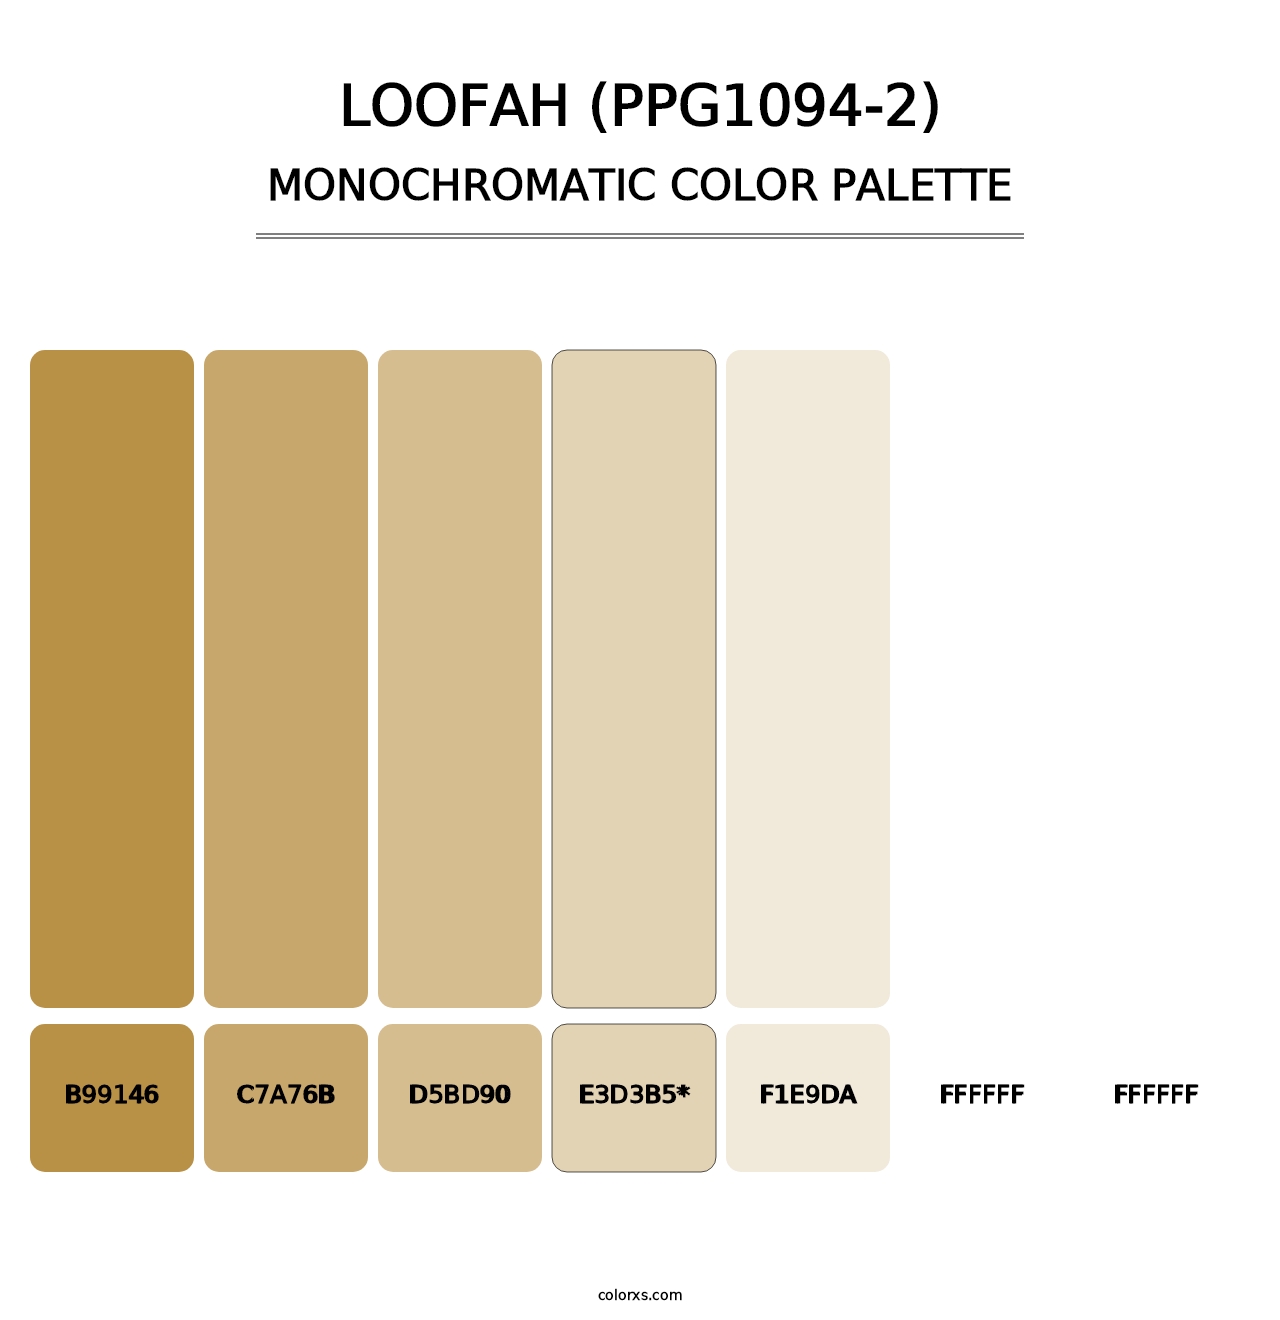 Loofah (PPG1094-2) - Monochromatic Color Palette